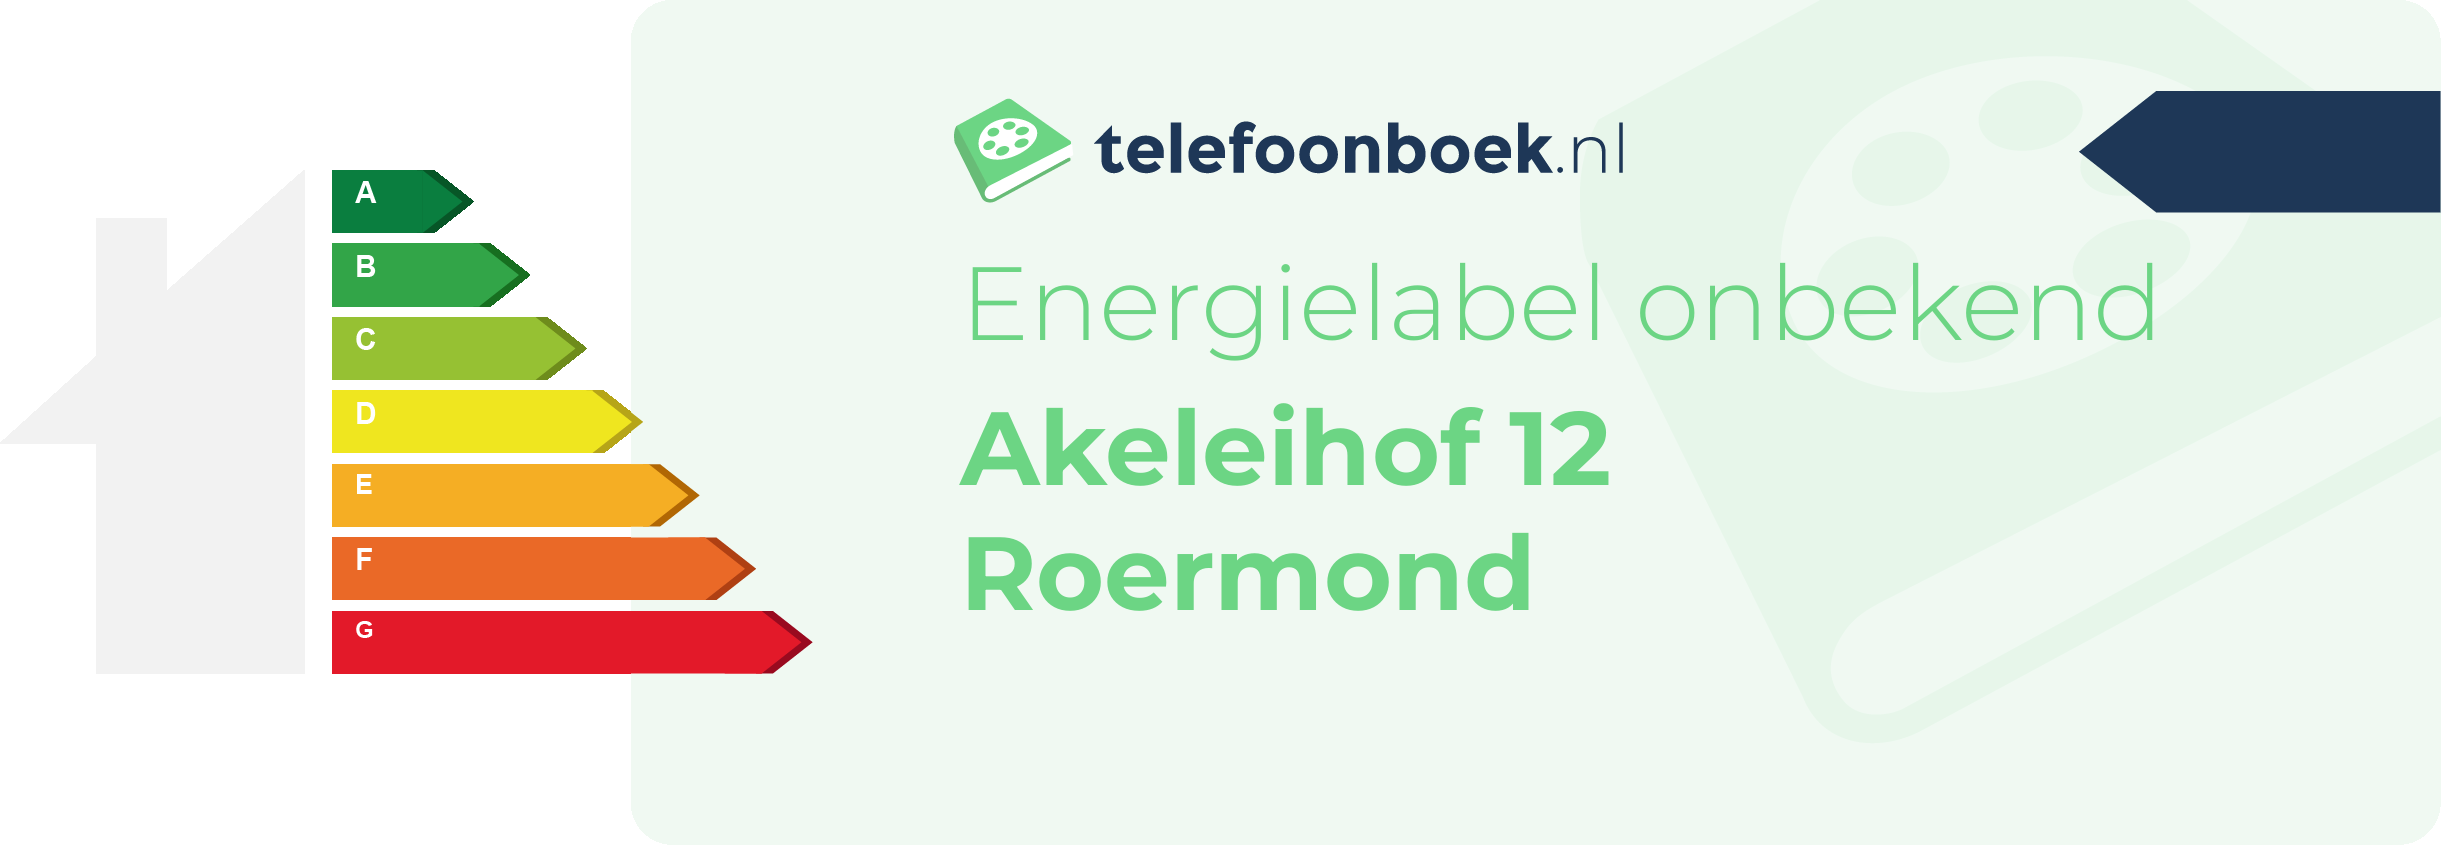 Energielabel Akeleihof 12 Roermond